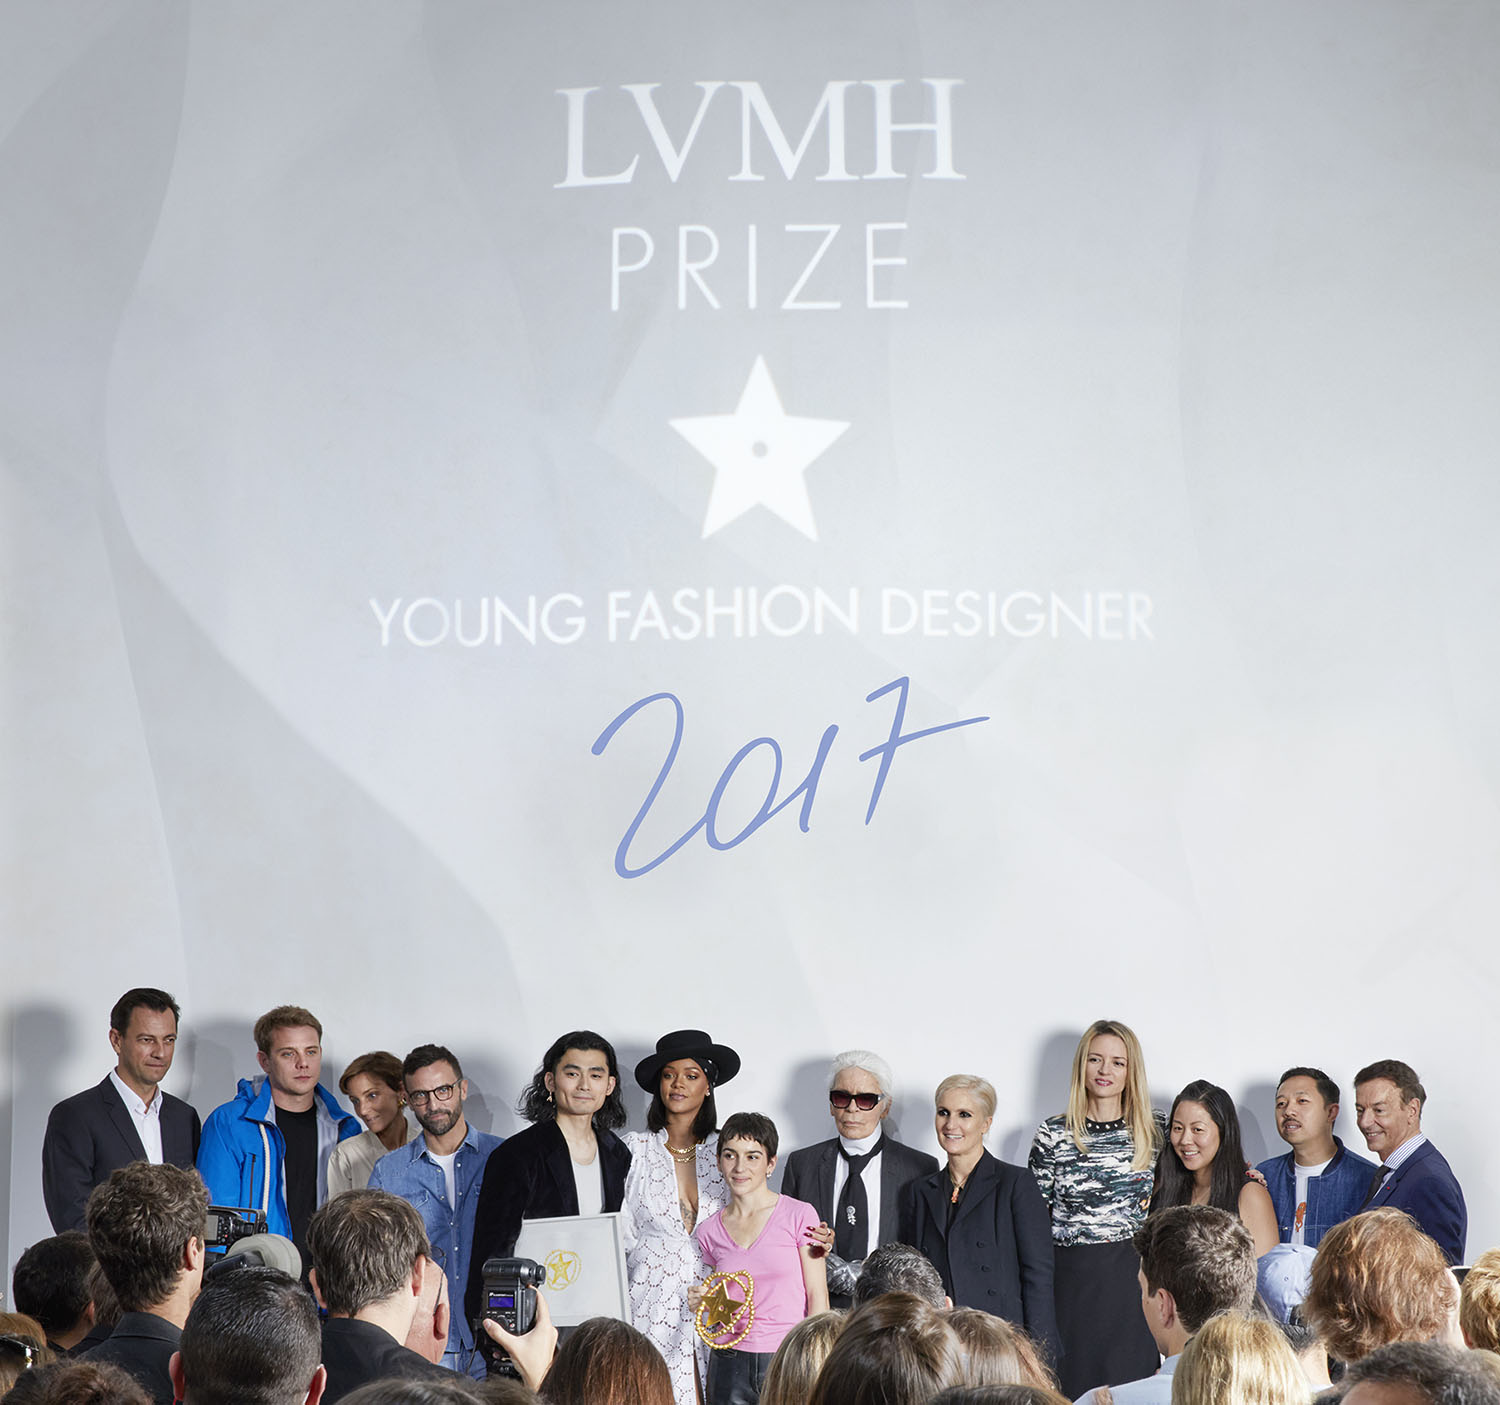 第四屆LVMH_Prize得主出爐_新銳設計師Marine_Serre衝突美學驚艷評審9.jpg